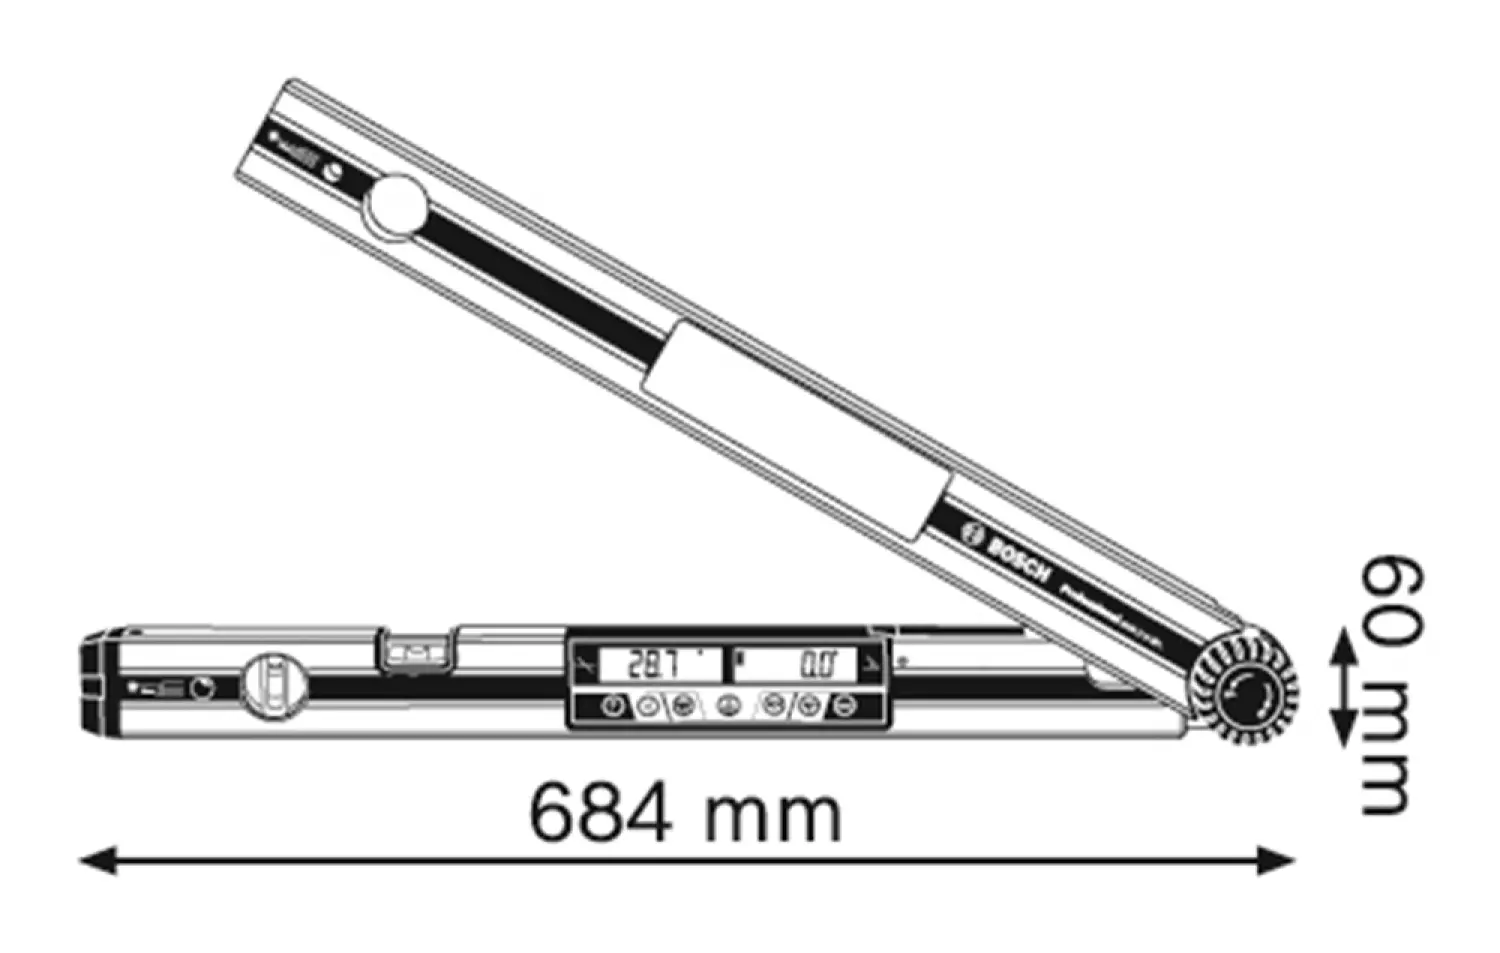 Bosch GAM 270 MFL mesureur d'angle numérique en sac - 271